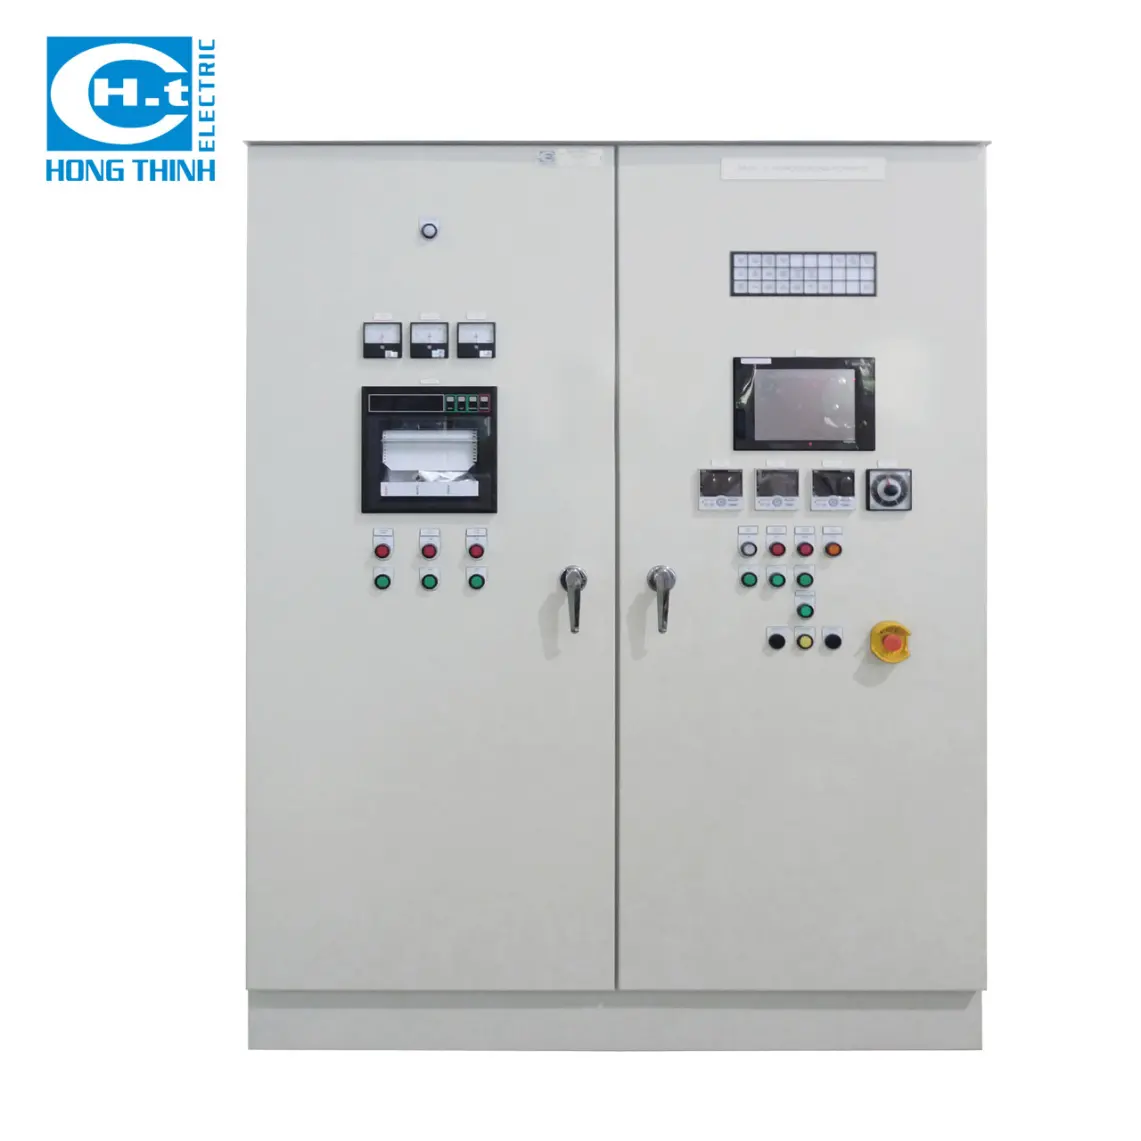 제어반 PLC HMI 제어반 내각 전기 제어반 기준은 61439NEMA jis로 IEC 61439 를 따릅니다